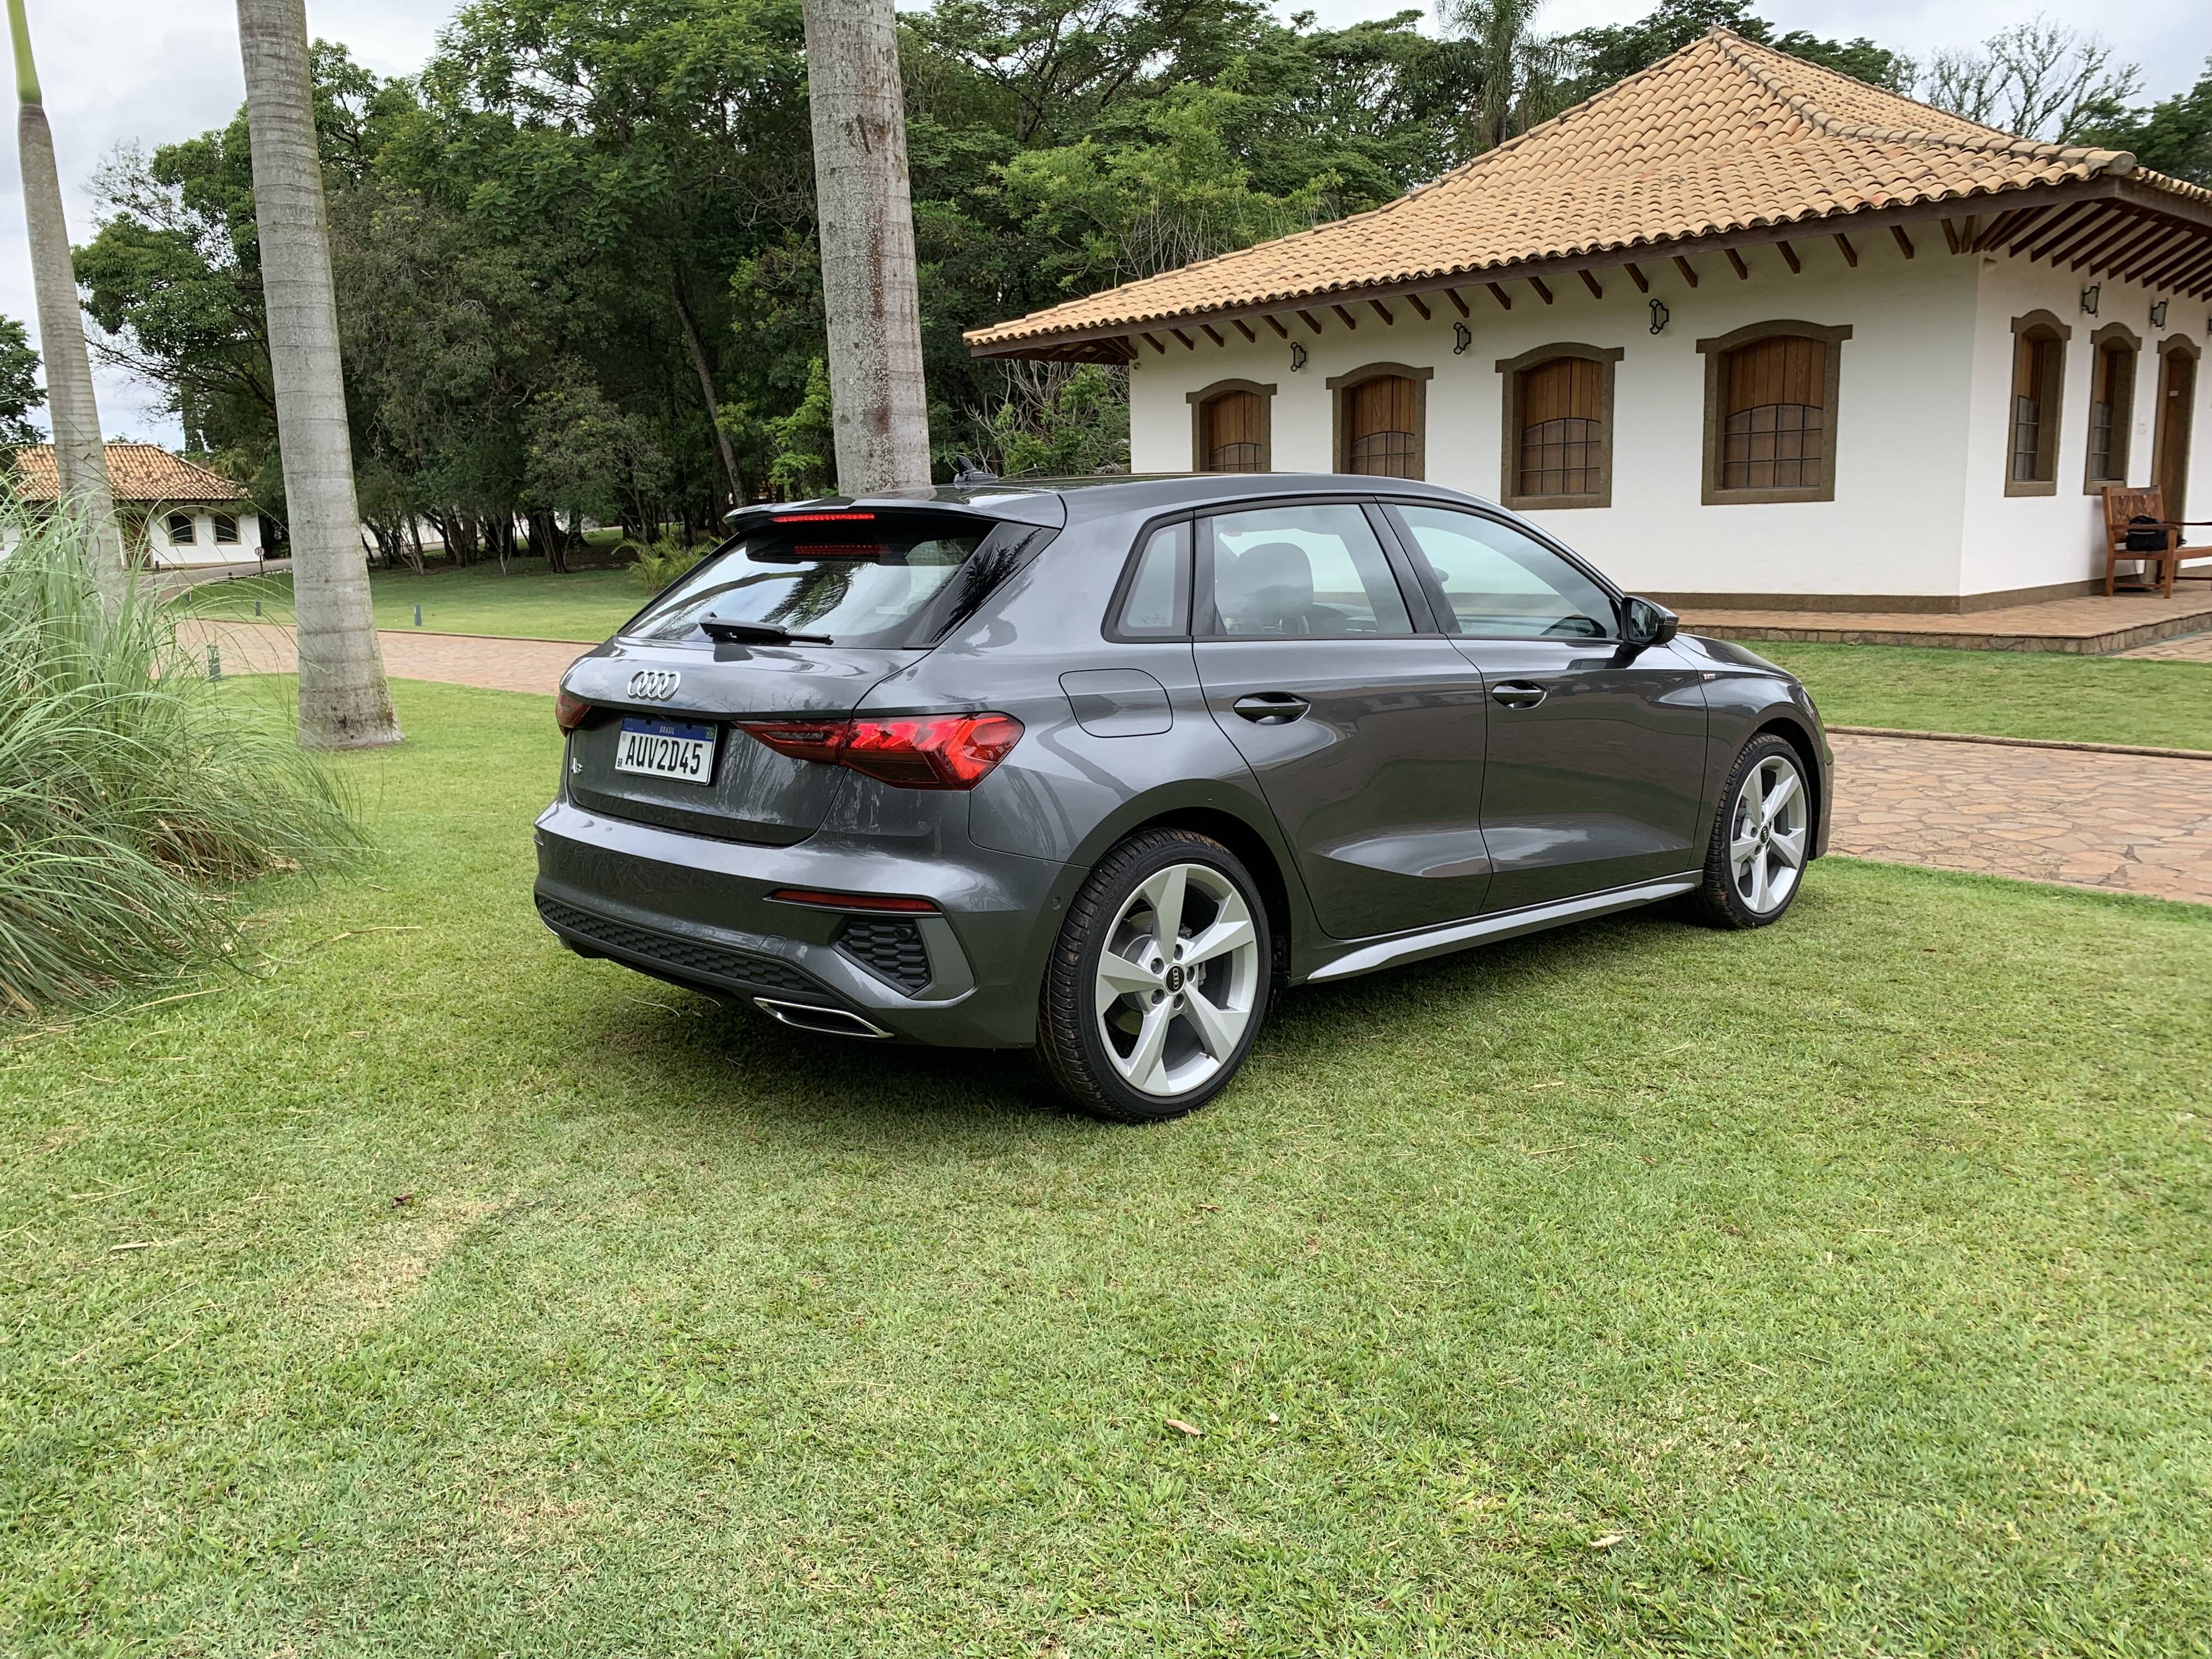 Novo Audi A3. Foto: Divulgação